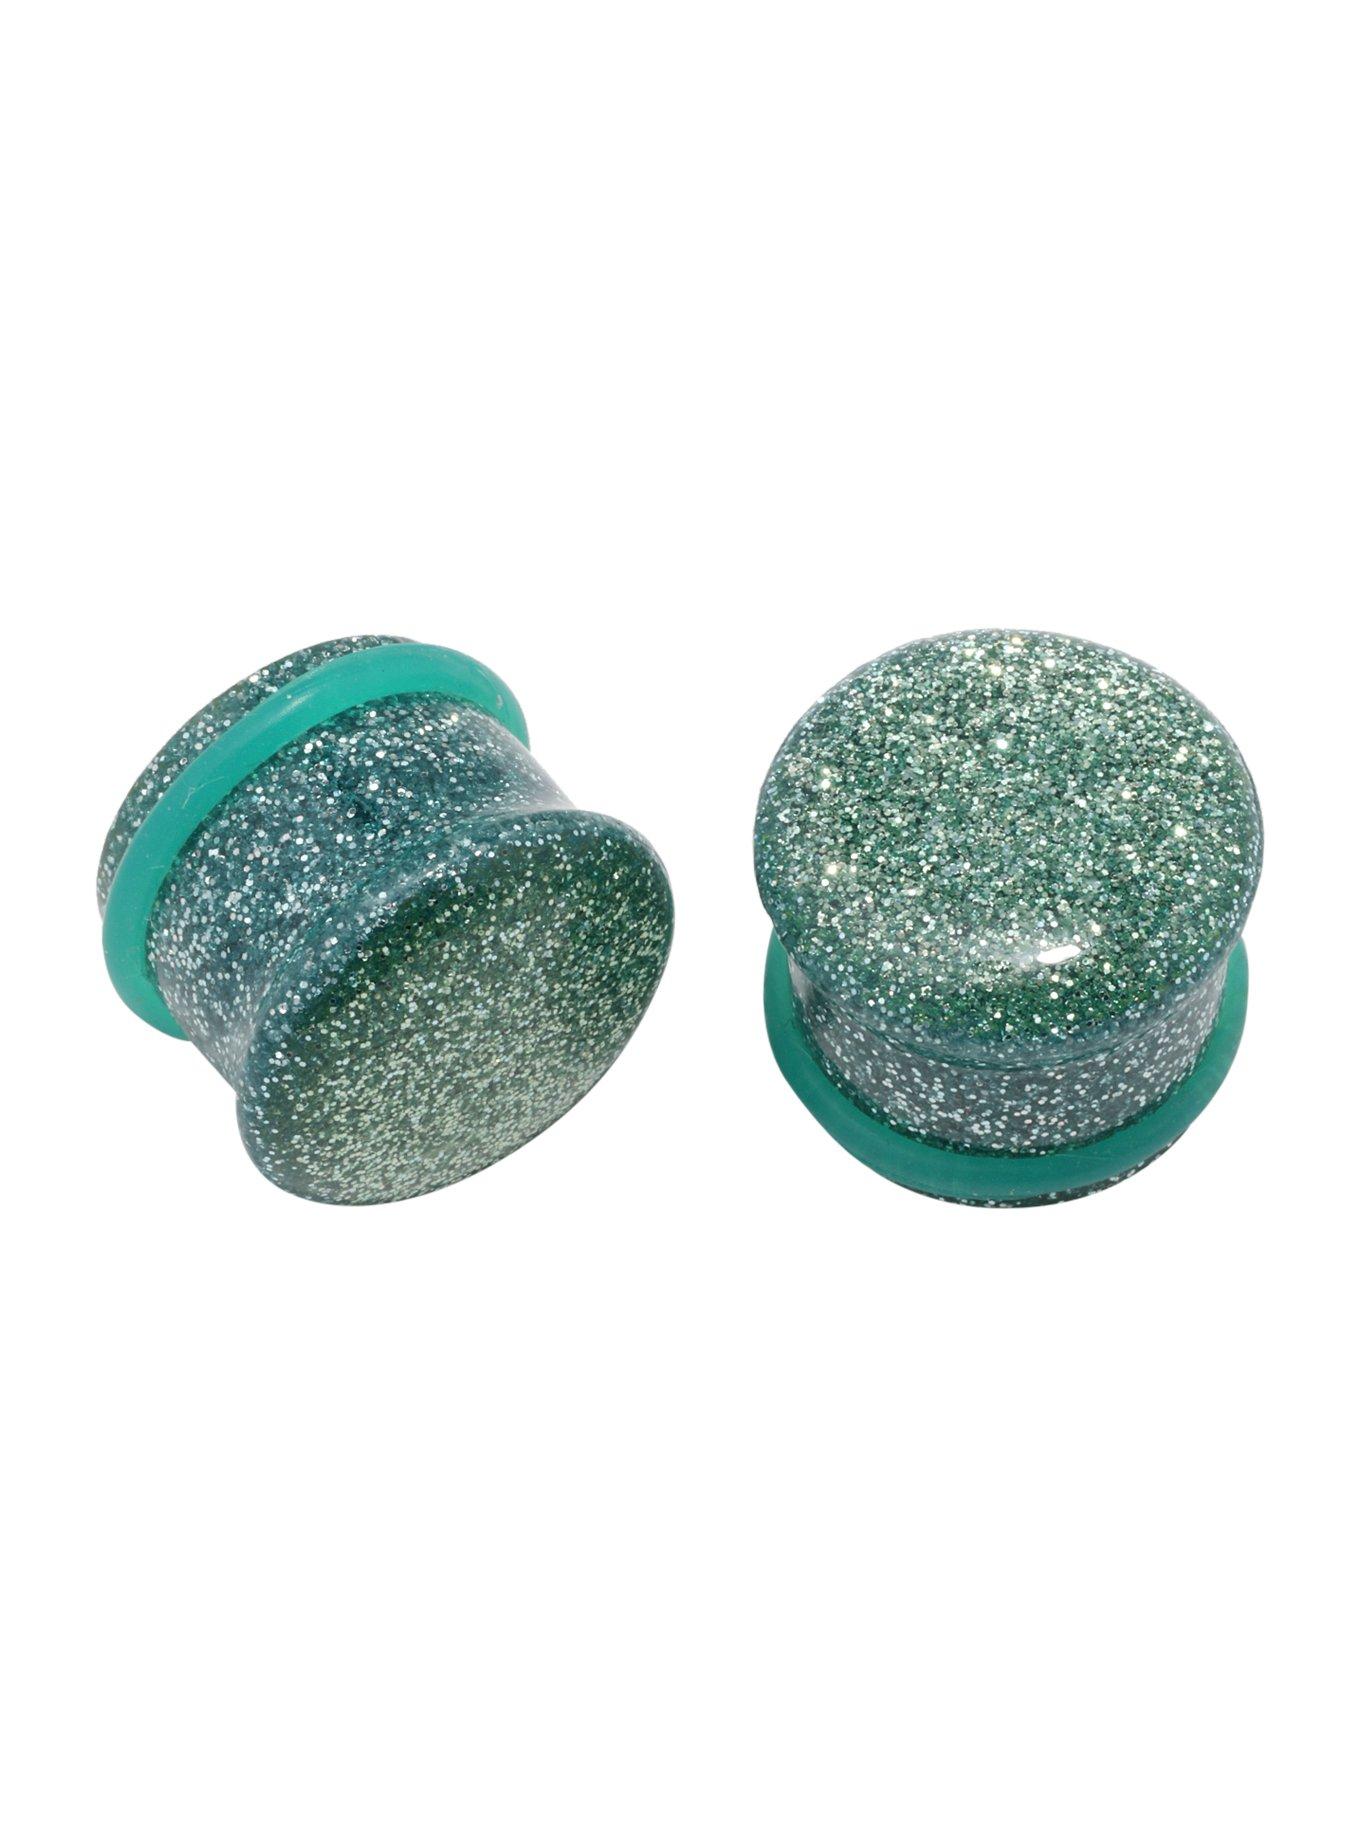 Acrylic Teal Glitter Plug 2 Pack, MULTI, hi-res